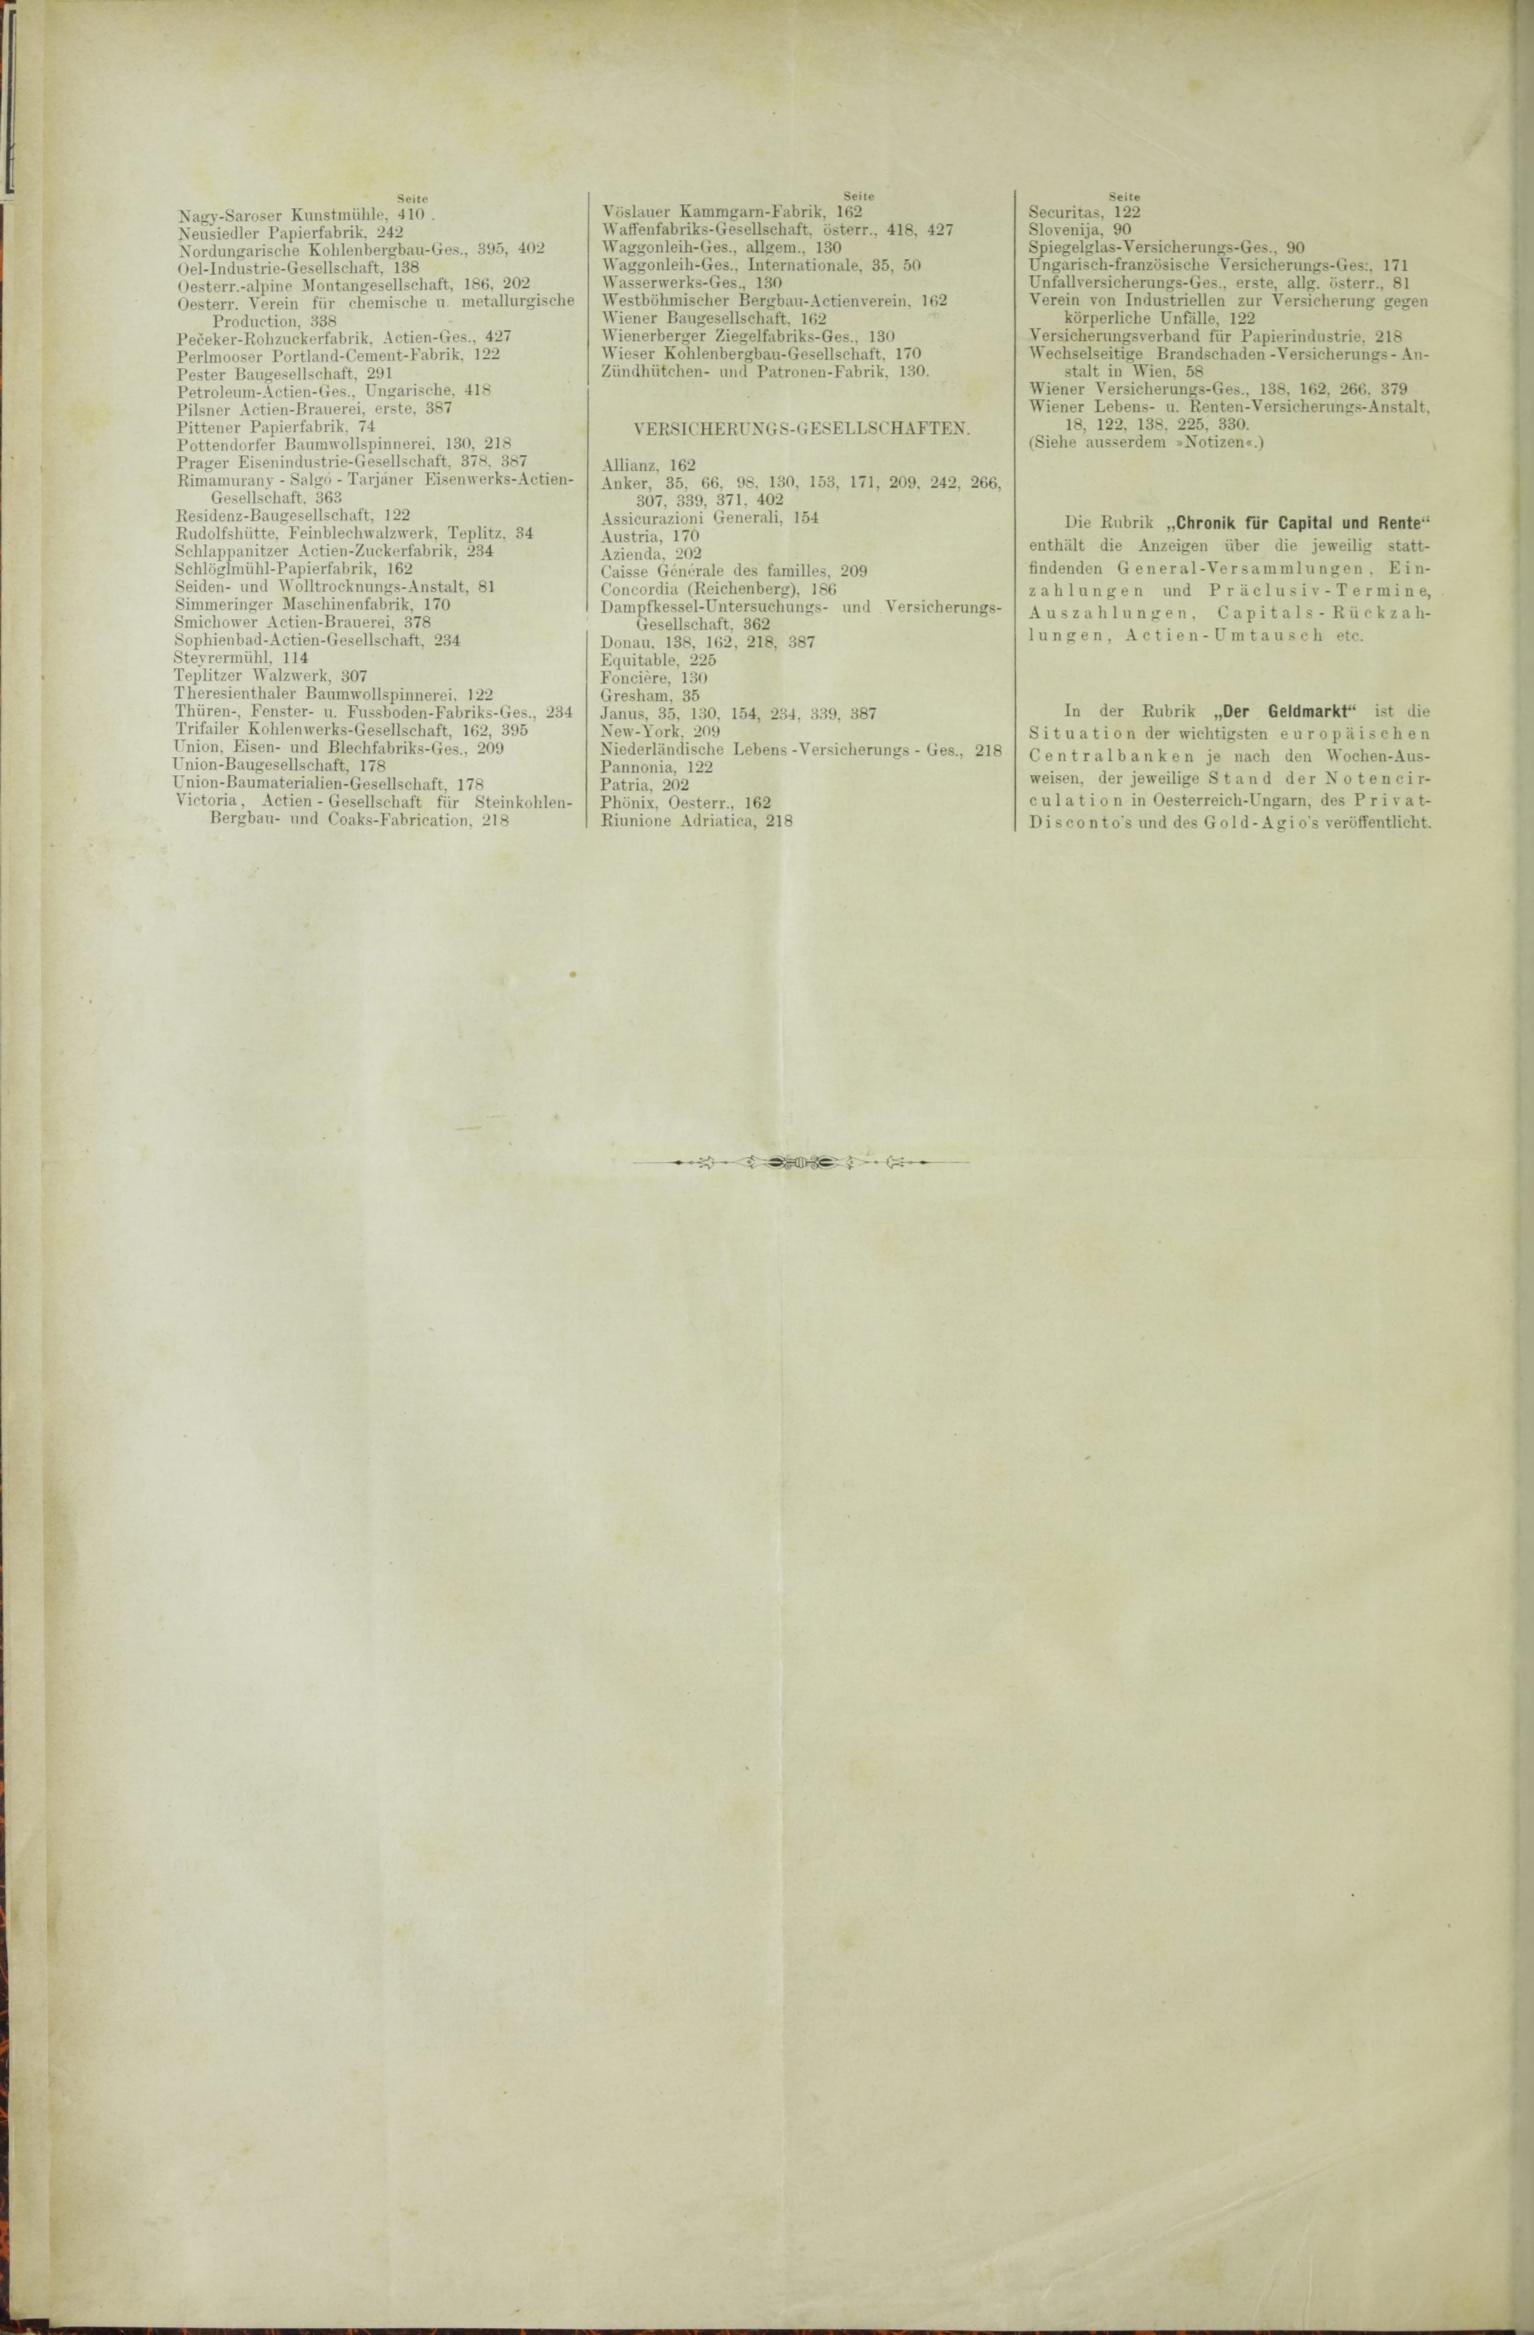 Der Tresor 24.09.1885 - Seite 12